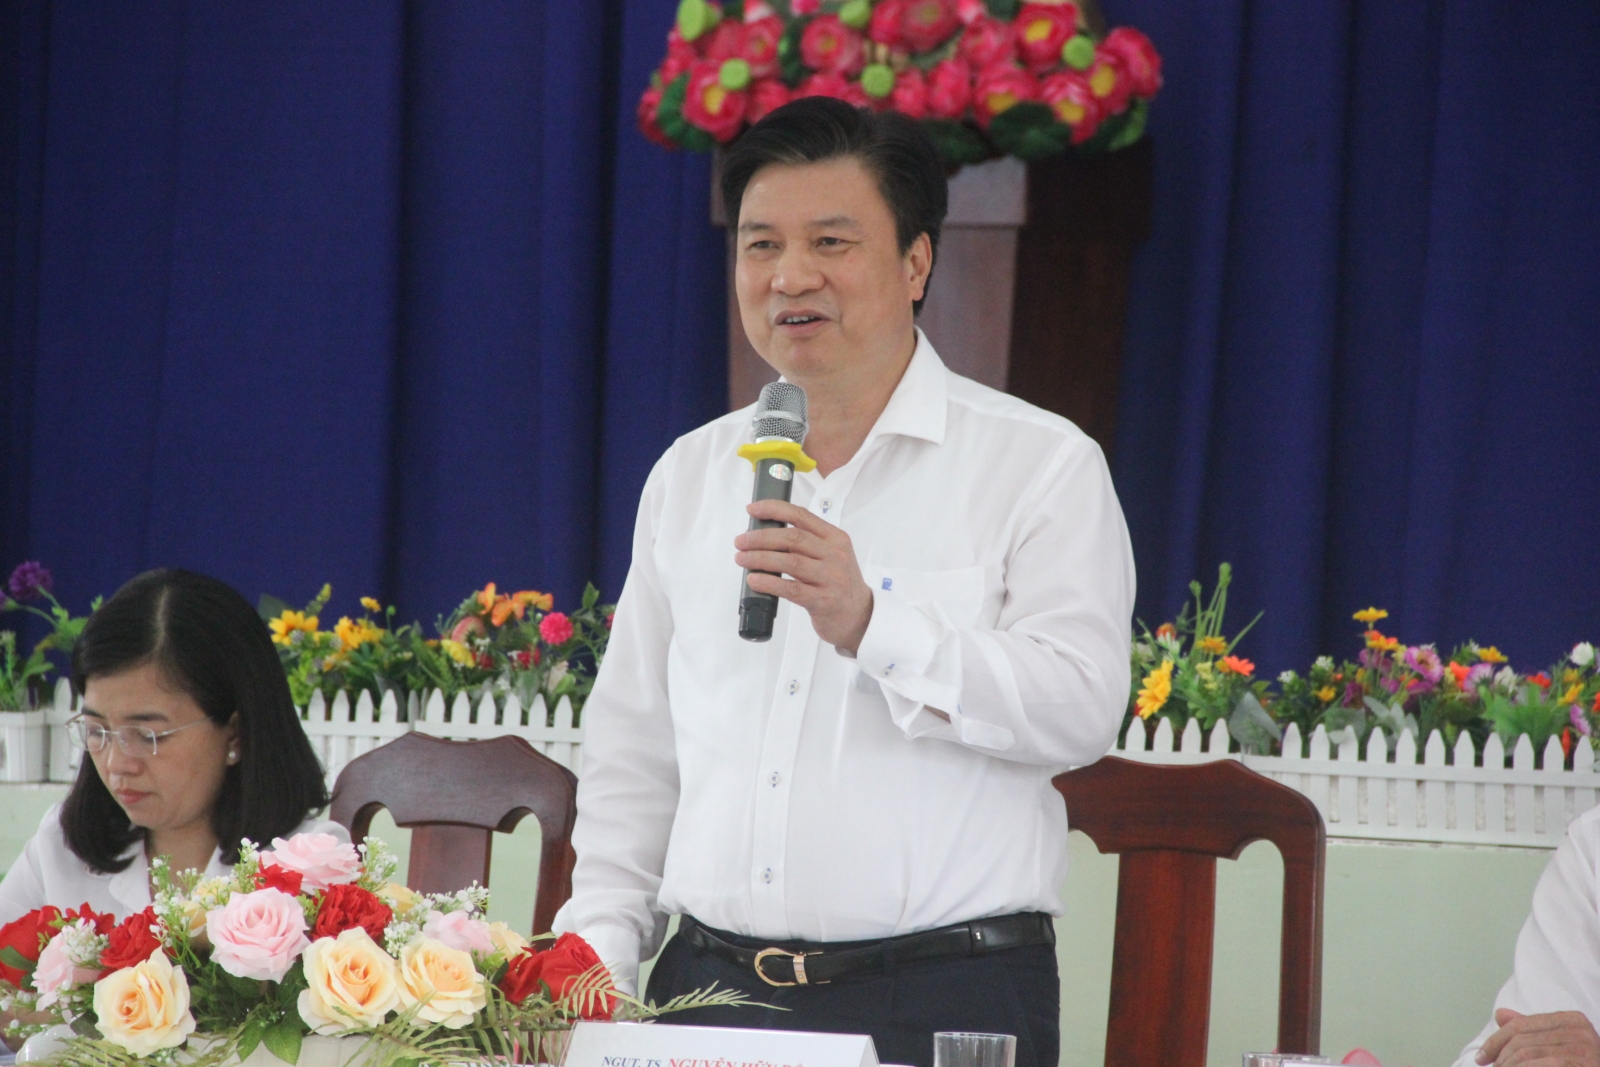 Thứ trưởng Nguyễn Hữu Độ khảo sát thực hiện chương trình GDPT 2018 tại TPHCM